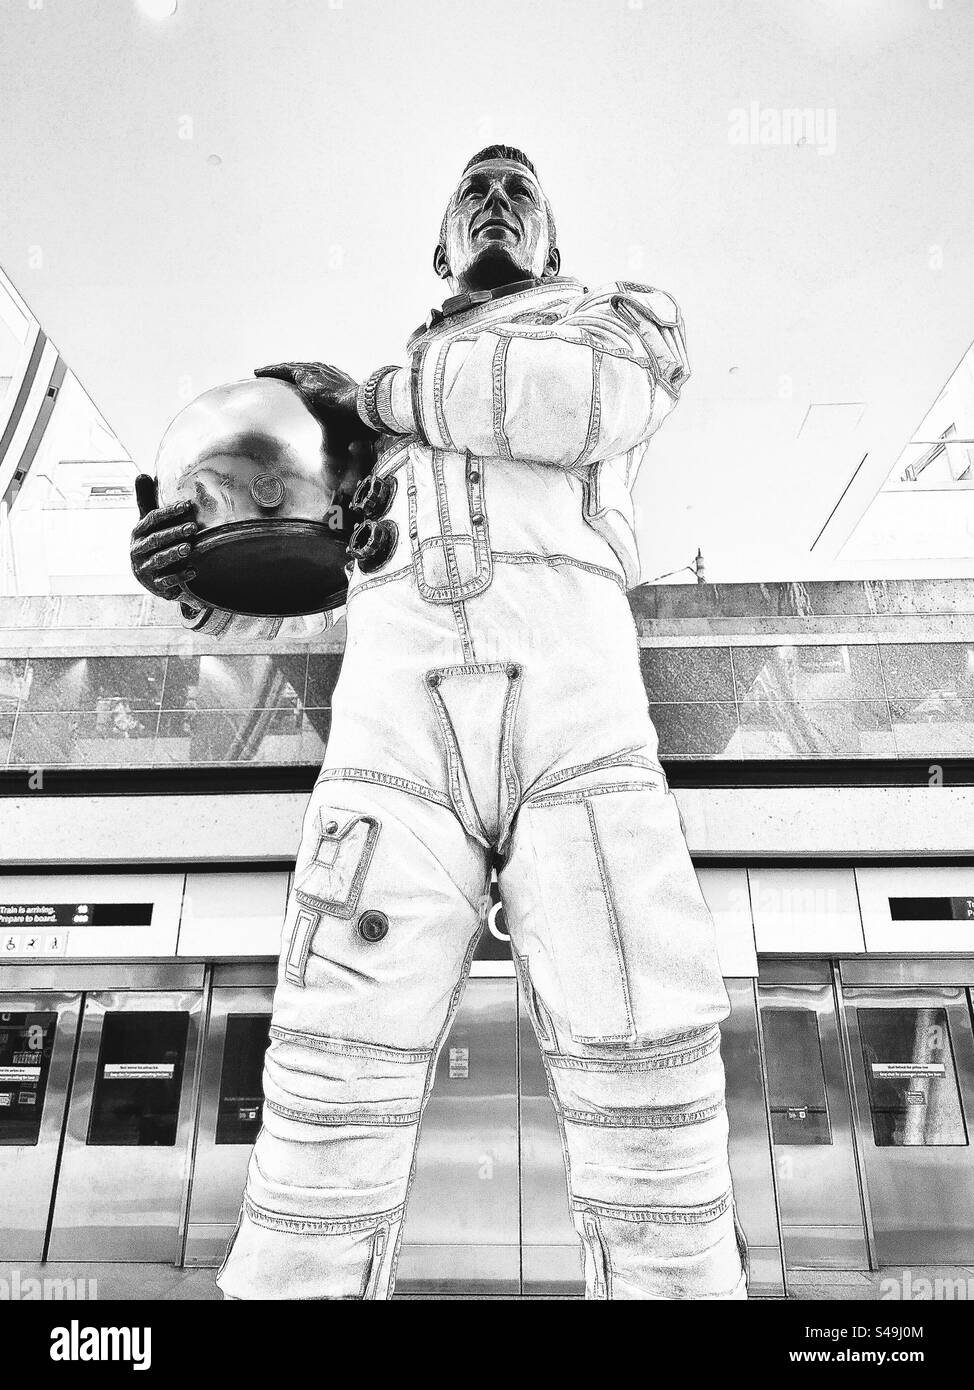 Denver, Colorado, États-Unis : Statue de John L. « Jack » Swigert, Jr. à l’aéroport international de Denver (DIA). Astronaute américain de la NASA, ingénieur, pilote de l'US Air Force et politicien. Filtre noir et blanc. Banque D'Images